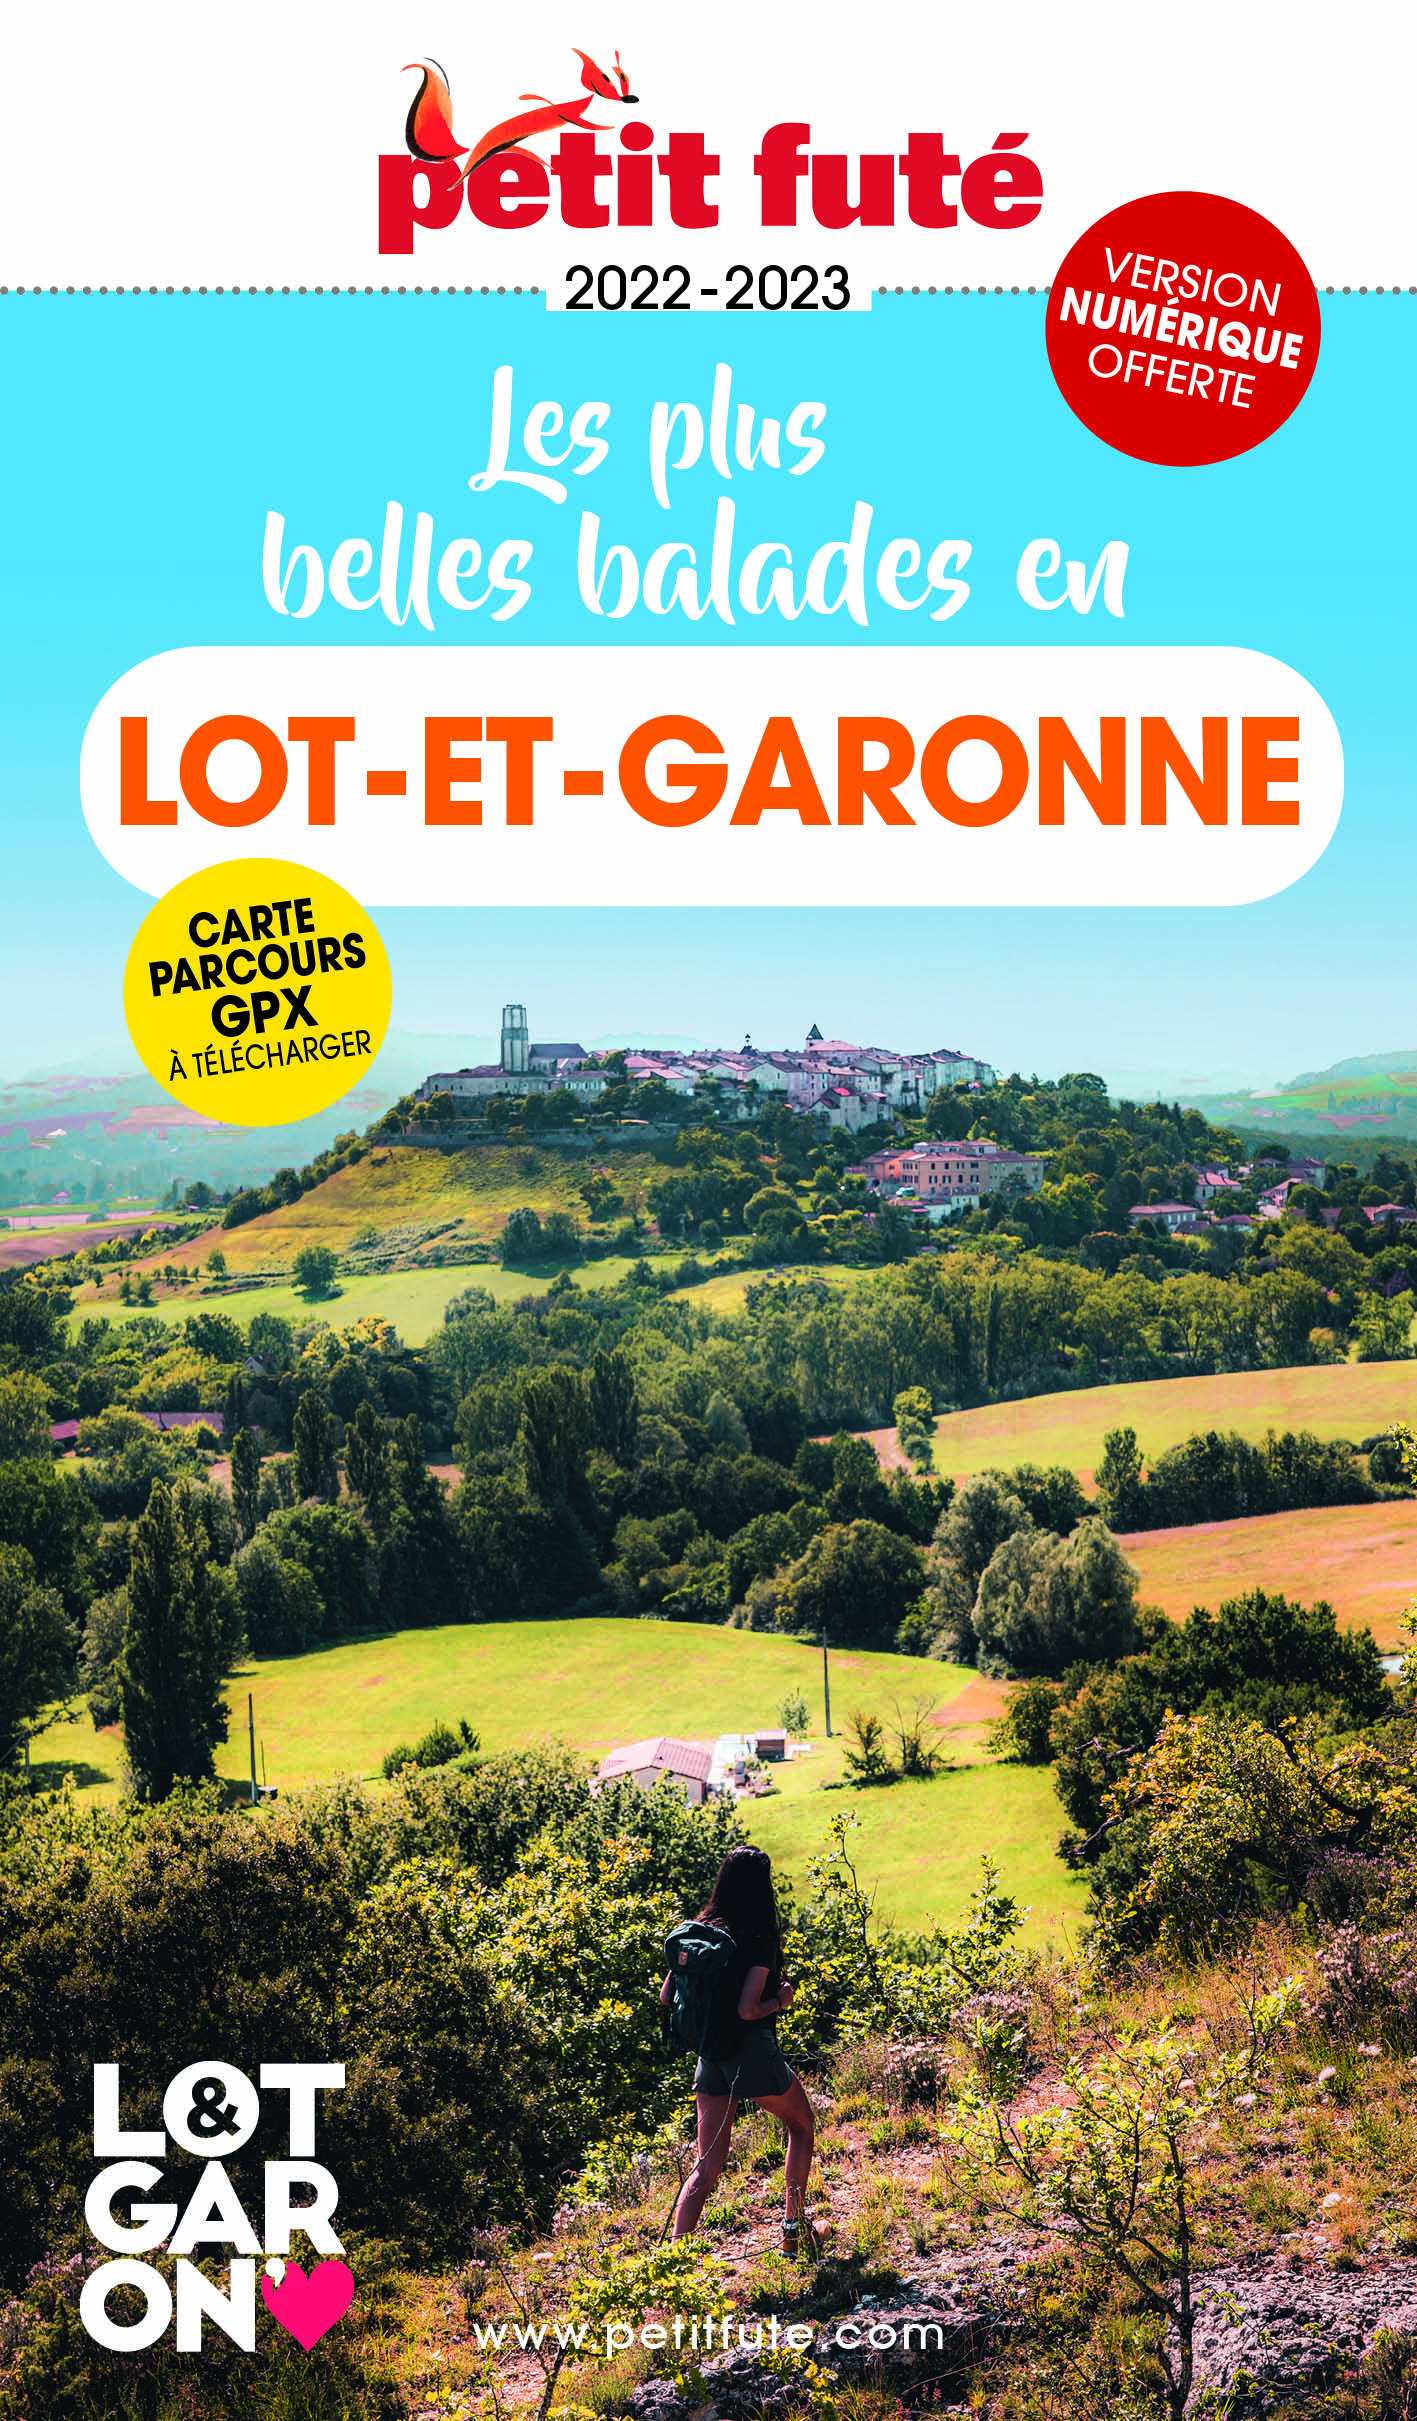 Les plus belles balades en Lot-et-Garonne.